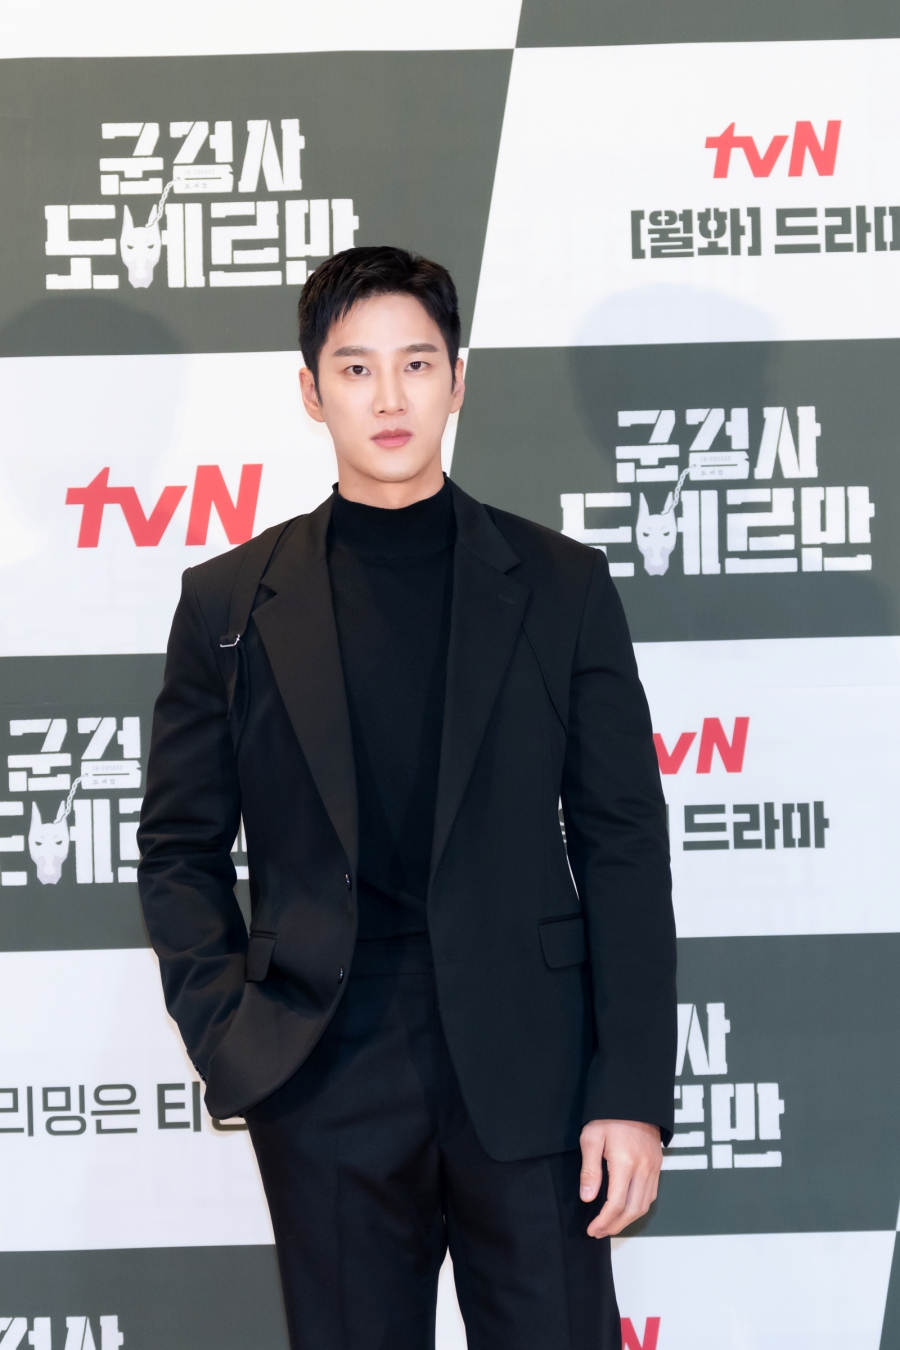 '군검사 도베르만' 온라인 제작발표회 / 사진: tvN 제공